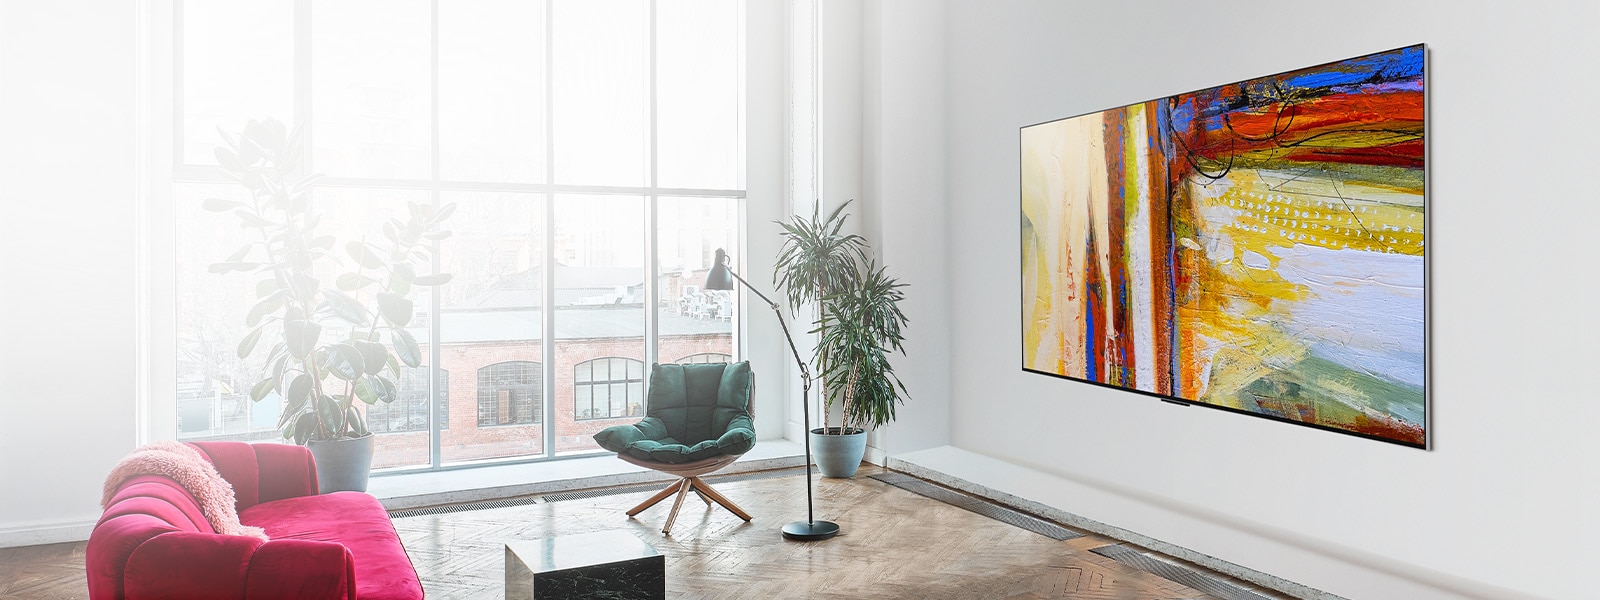 Картина LG OLED G3, на якій зображено барвистий абстрактний витвір мистецтва у світлій та барвистій кімнаті.